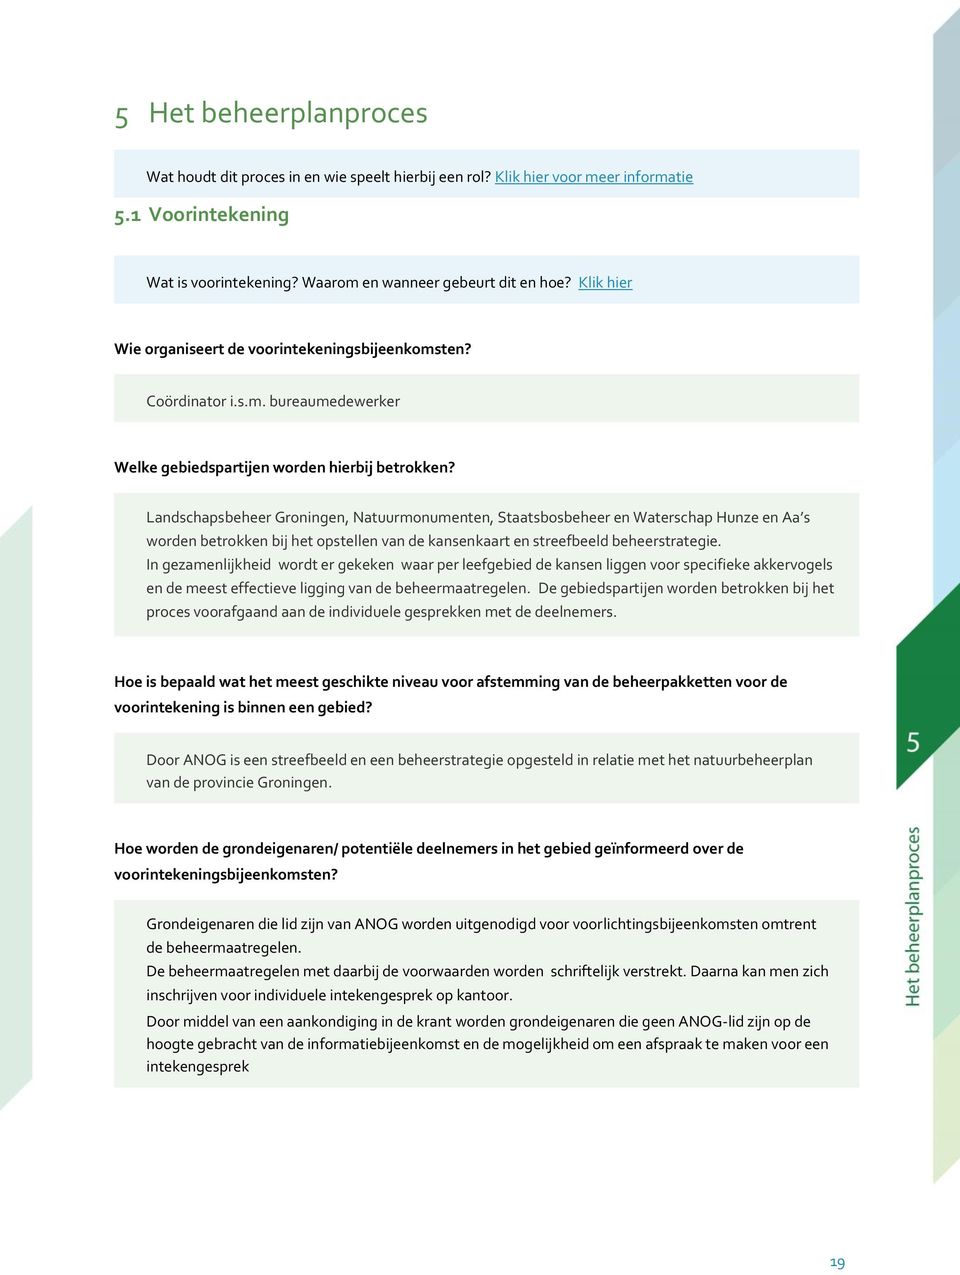 Landschapsbeheer Groningen, Natuurmonumenten, Staatsbosbeheer en Waterschap Hunze en Aa s worden betrokken bij het opstellen van de kansenkaart en streefbeeld beheerstrategie.